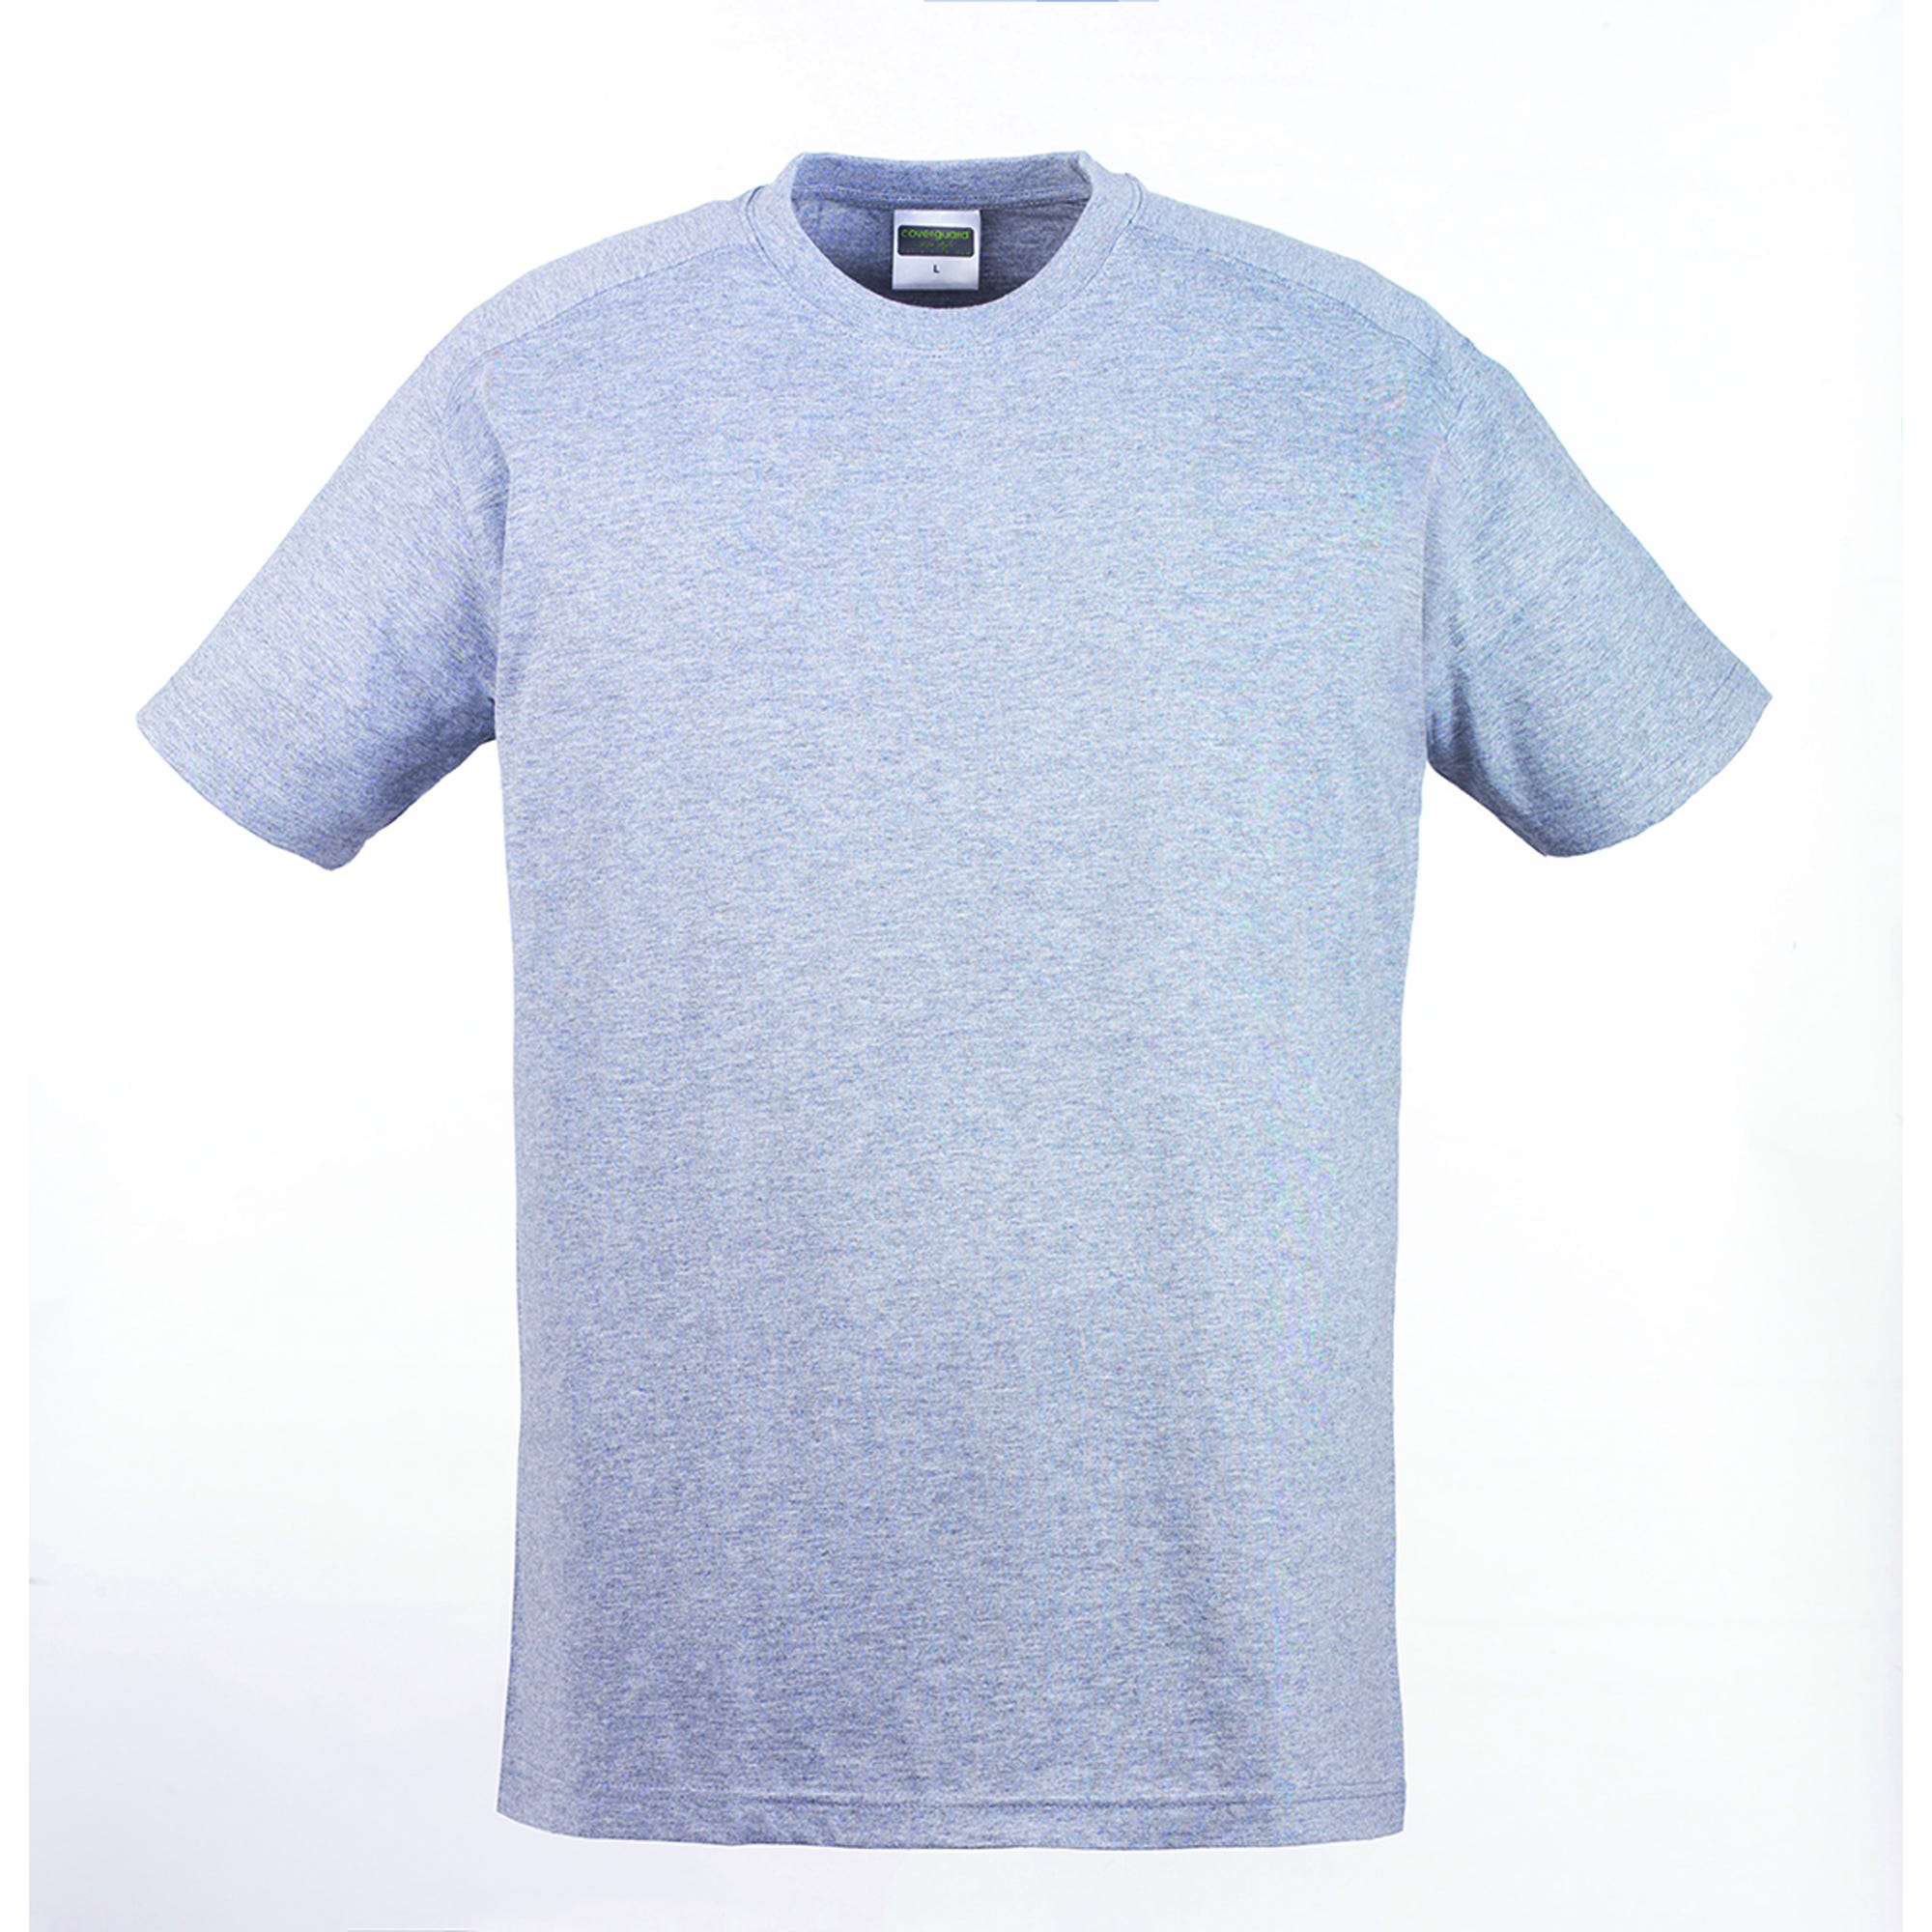 HIKE T-shirt MC gris chiné, 85% coton/15% viscose, 190g/m² - COVERGUARD - Taille M 1